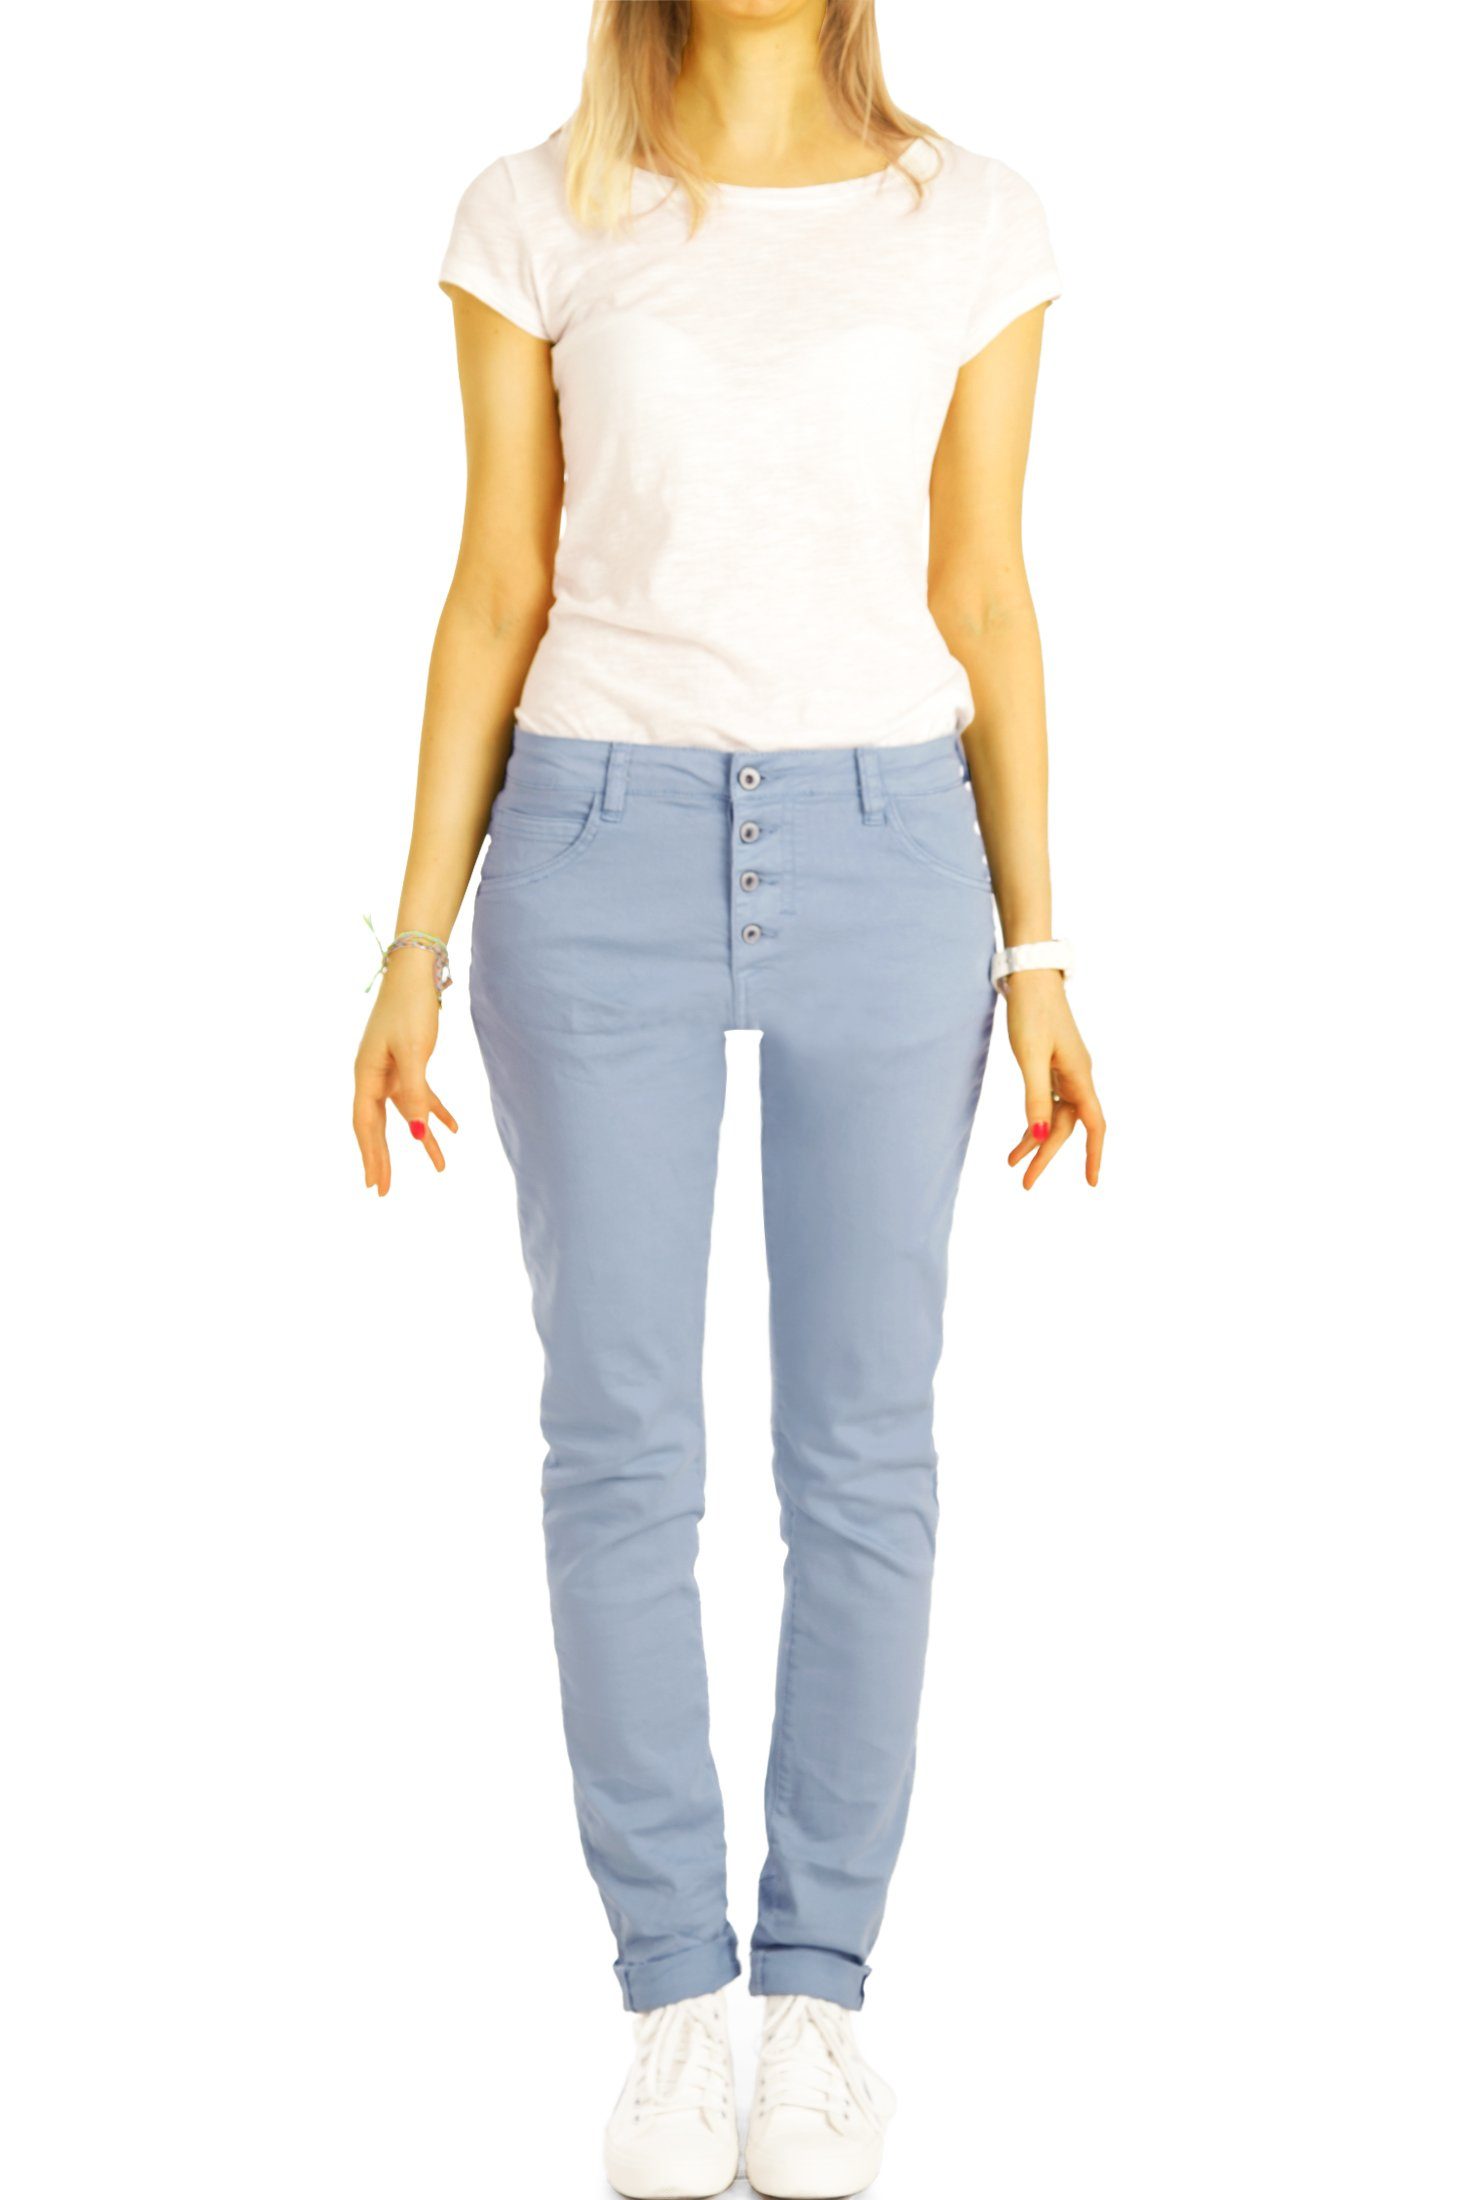 j30L-3 Knopfleiste Waist Jeans Hose Knopfleiste Boyfriend Medium be denim styled Stoffhose mit vordere Damen - -